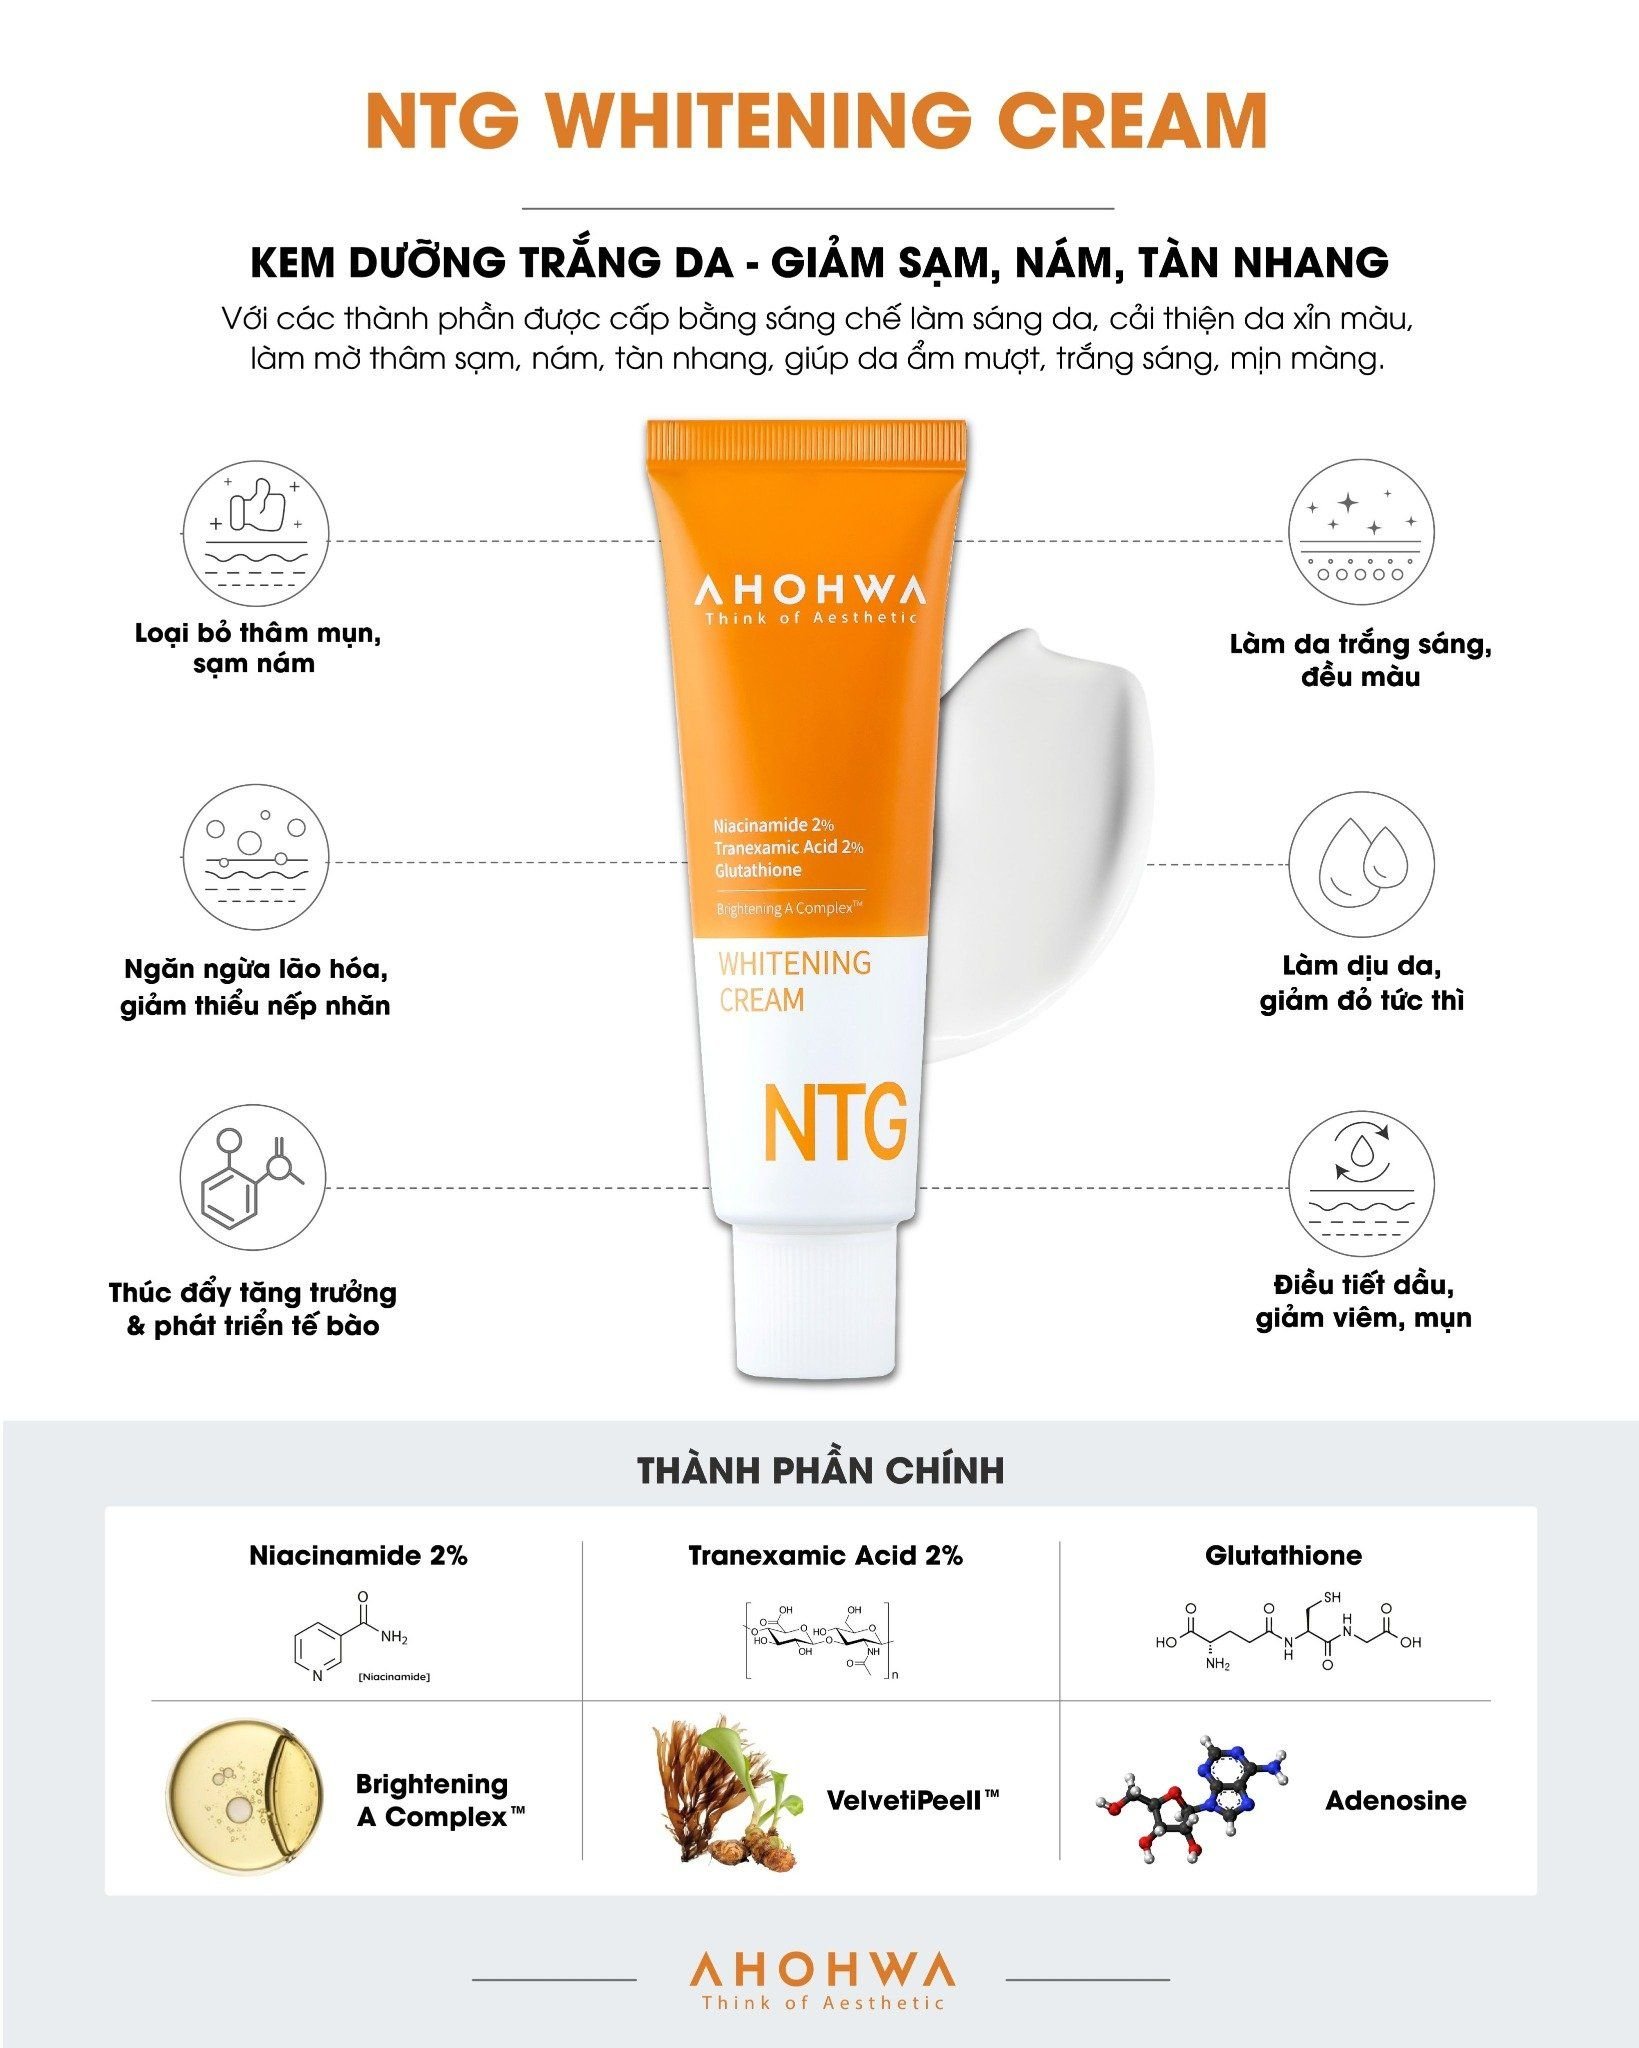  Kem dưỡng trắng da, giảm sạm - nám - tàn nhang Ahohwa Whitening Cream NTG (50ml) 